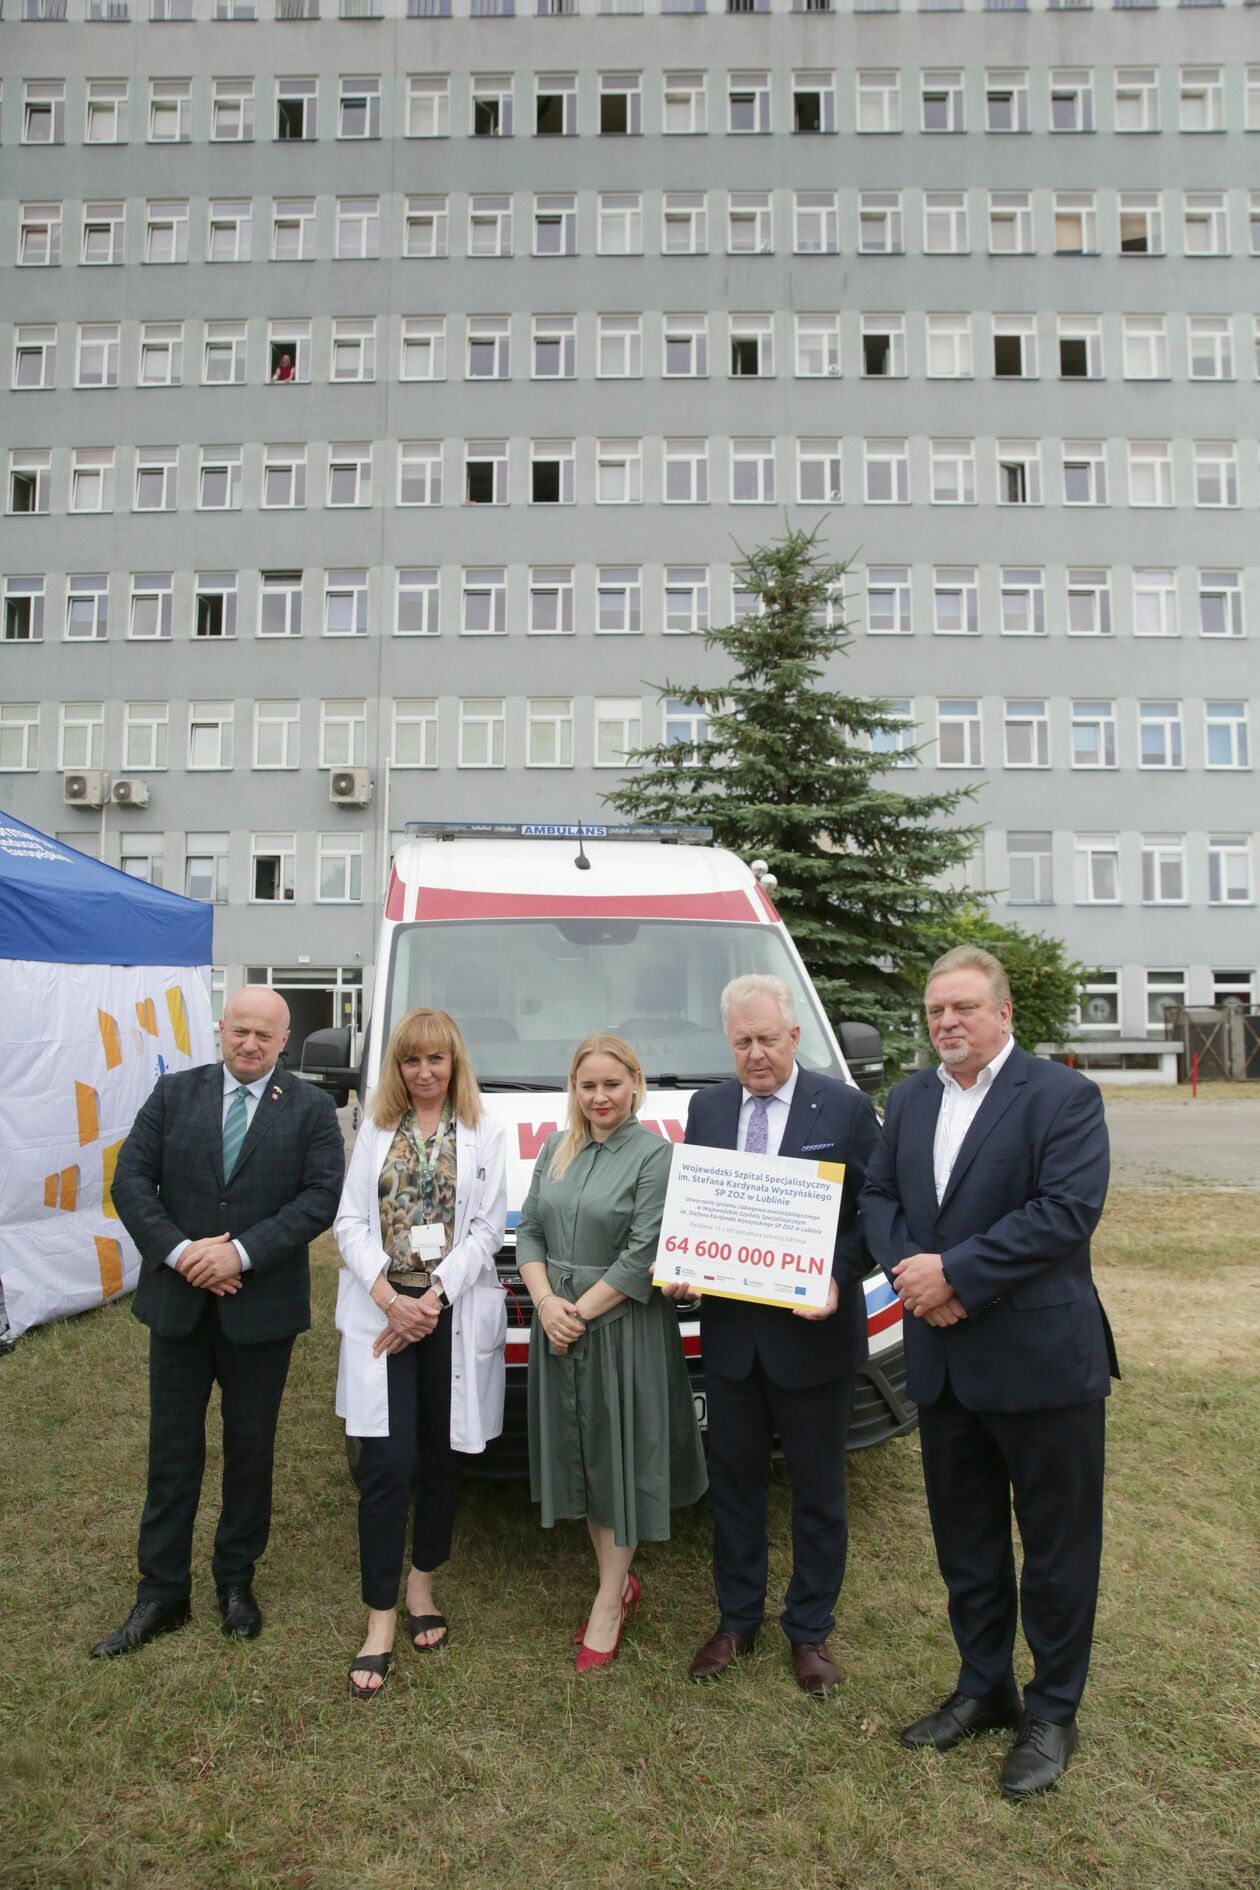 Podpisanie umowy na budowę nowej części szpitala wojewódzkiego przy al. Kraśnickiej